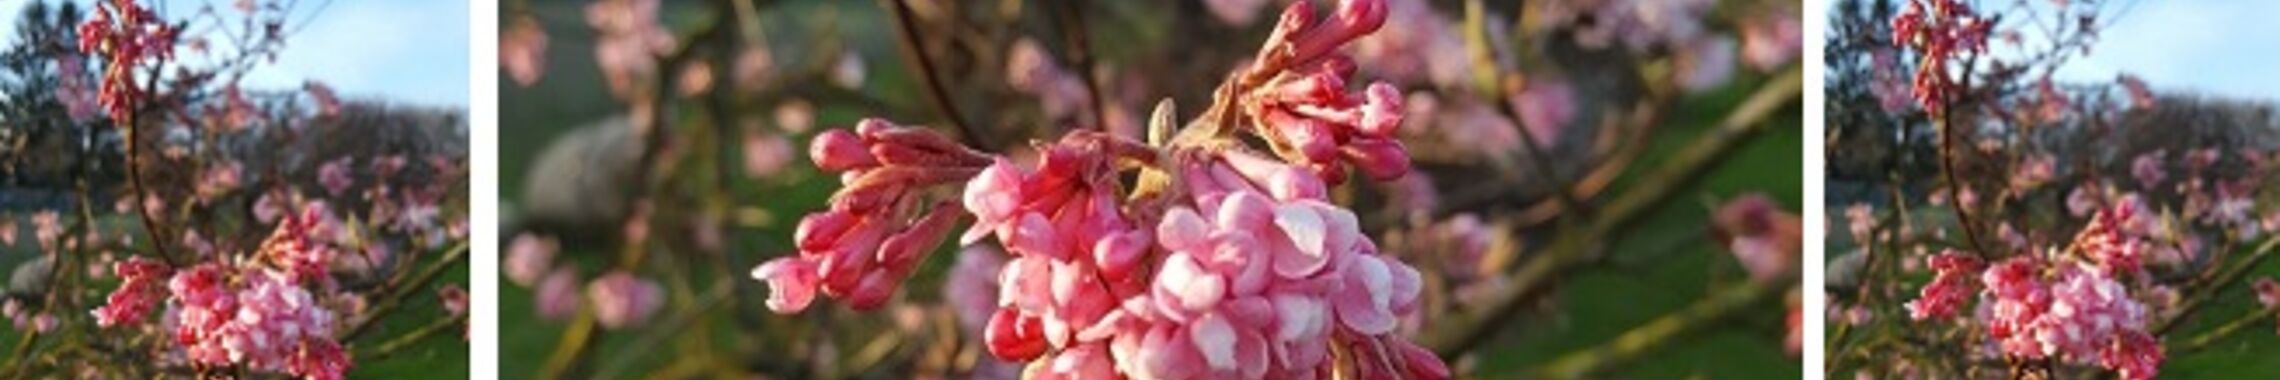 Starbild Frühling rosa